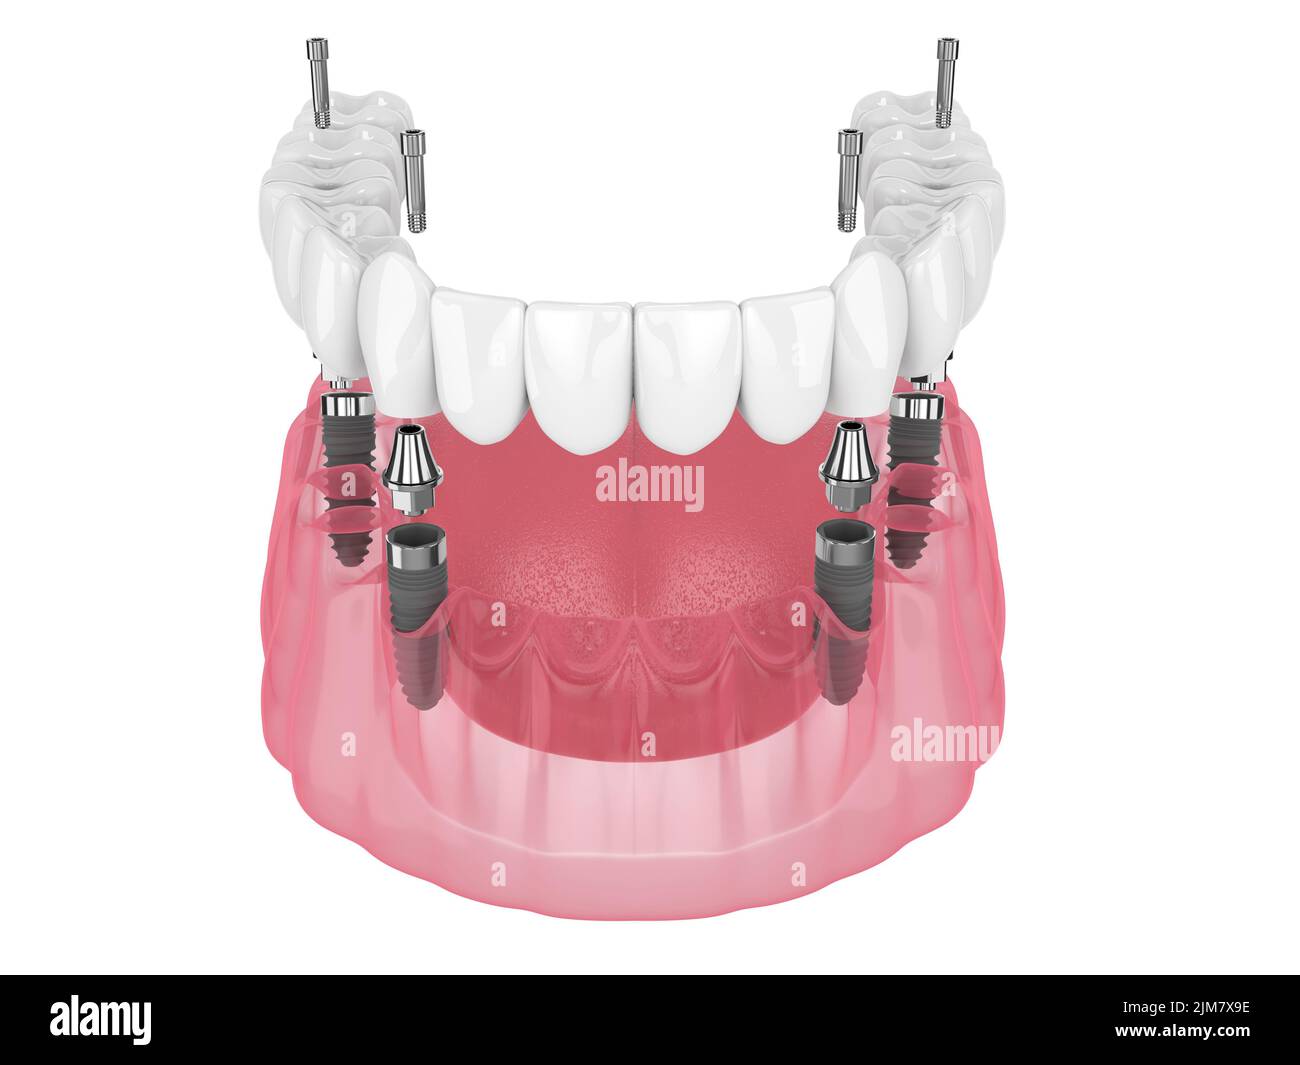 Prothèse mandibulaire, système All On 4 supporté par des implants sur fond blanc Banque D'Images